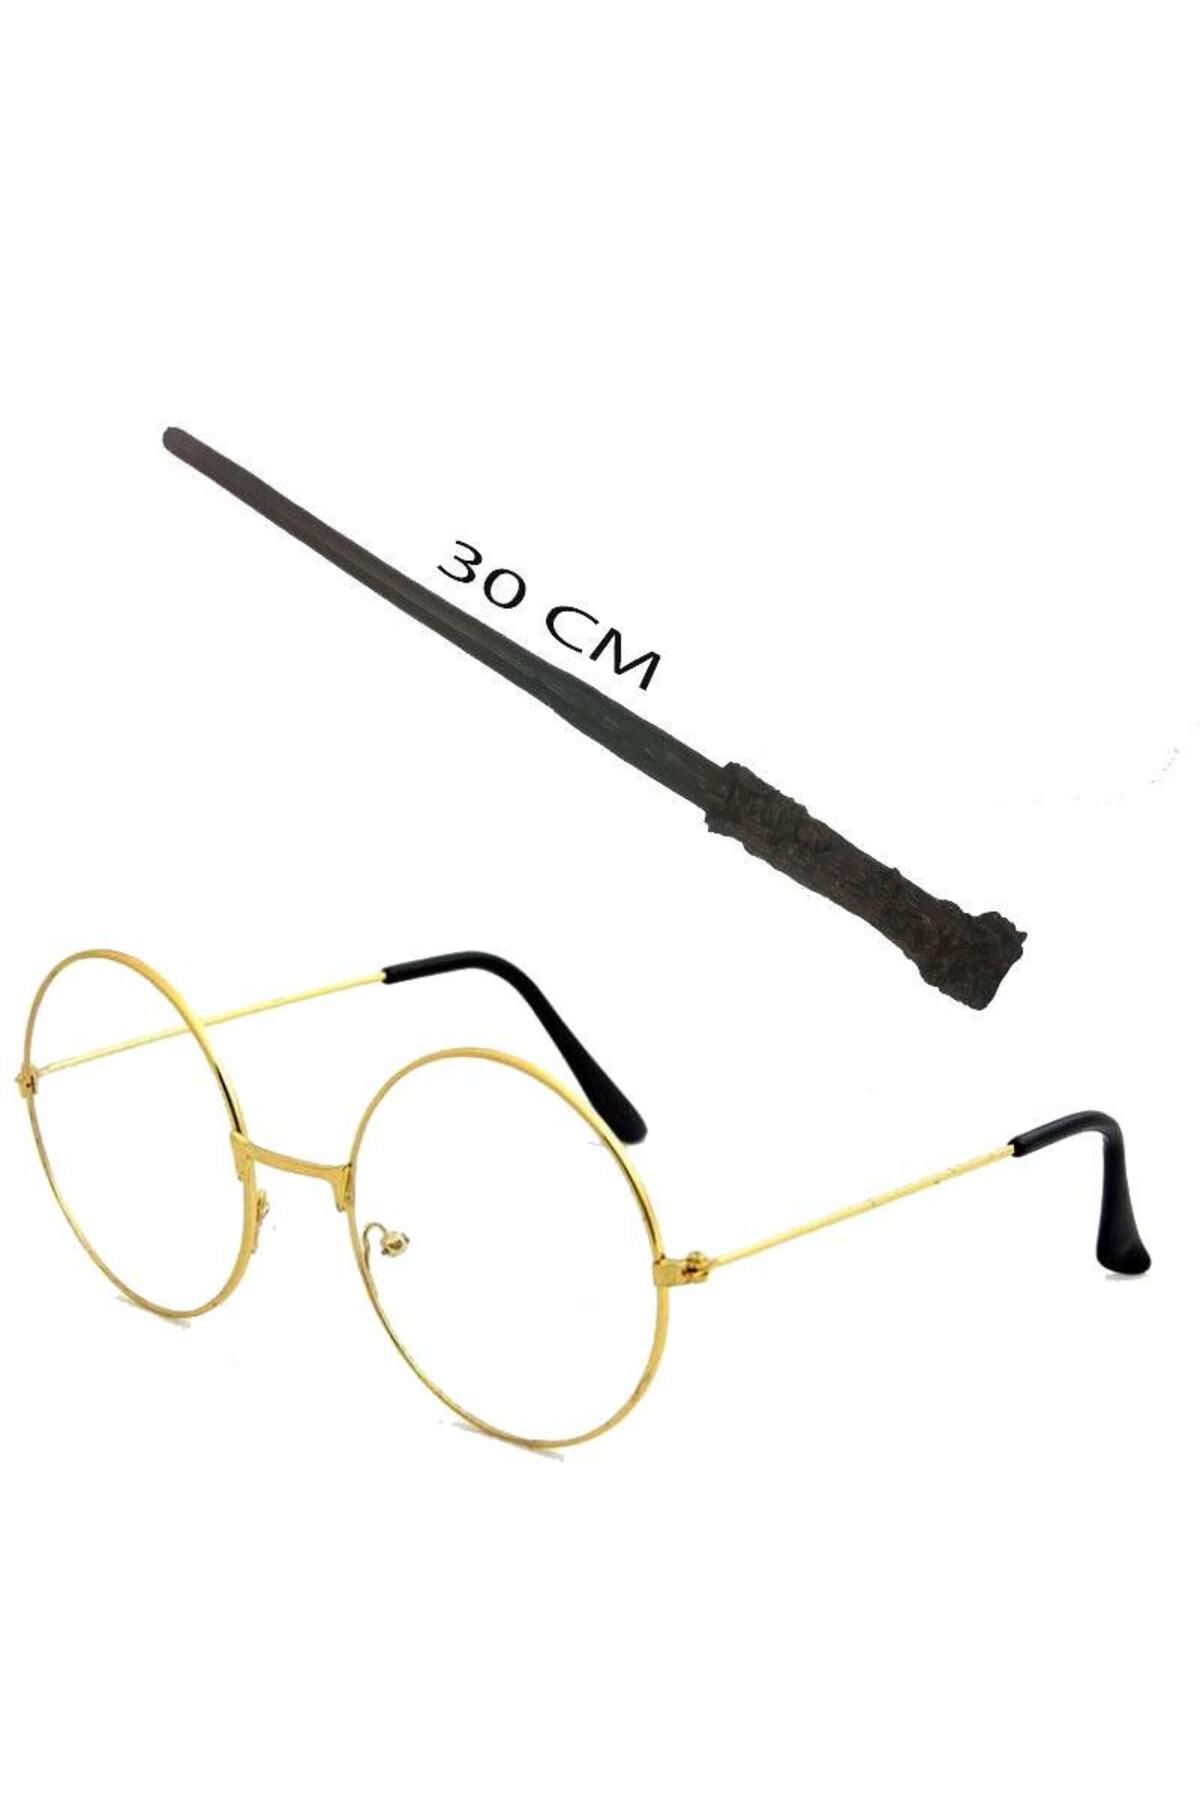 Rose La Belles Harry Potter Asası 30 cm ve Harry Potter Gözlüğü Seti